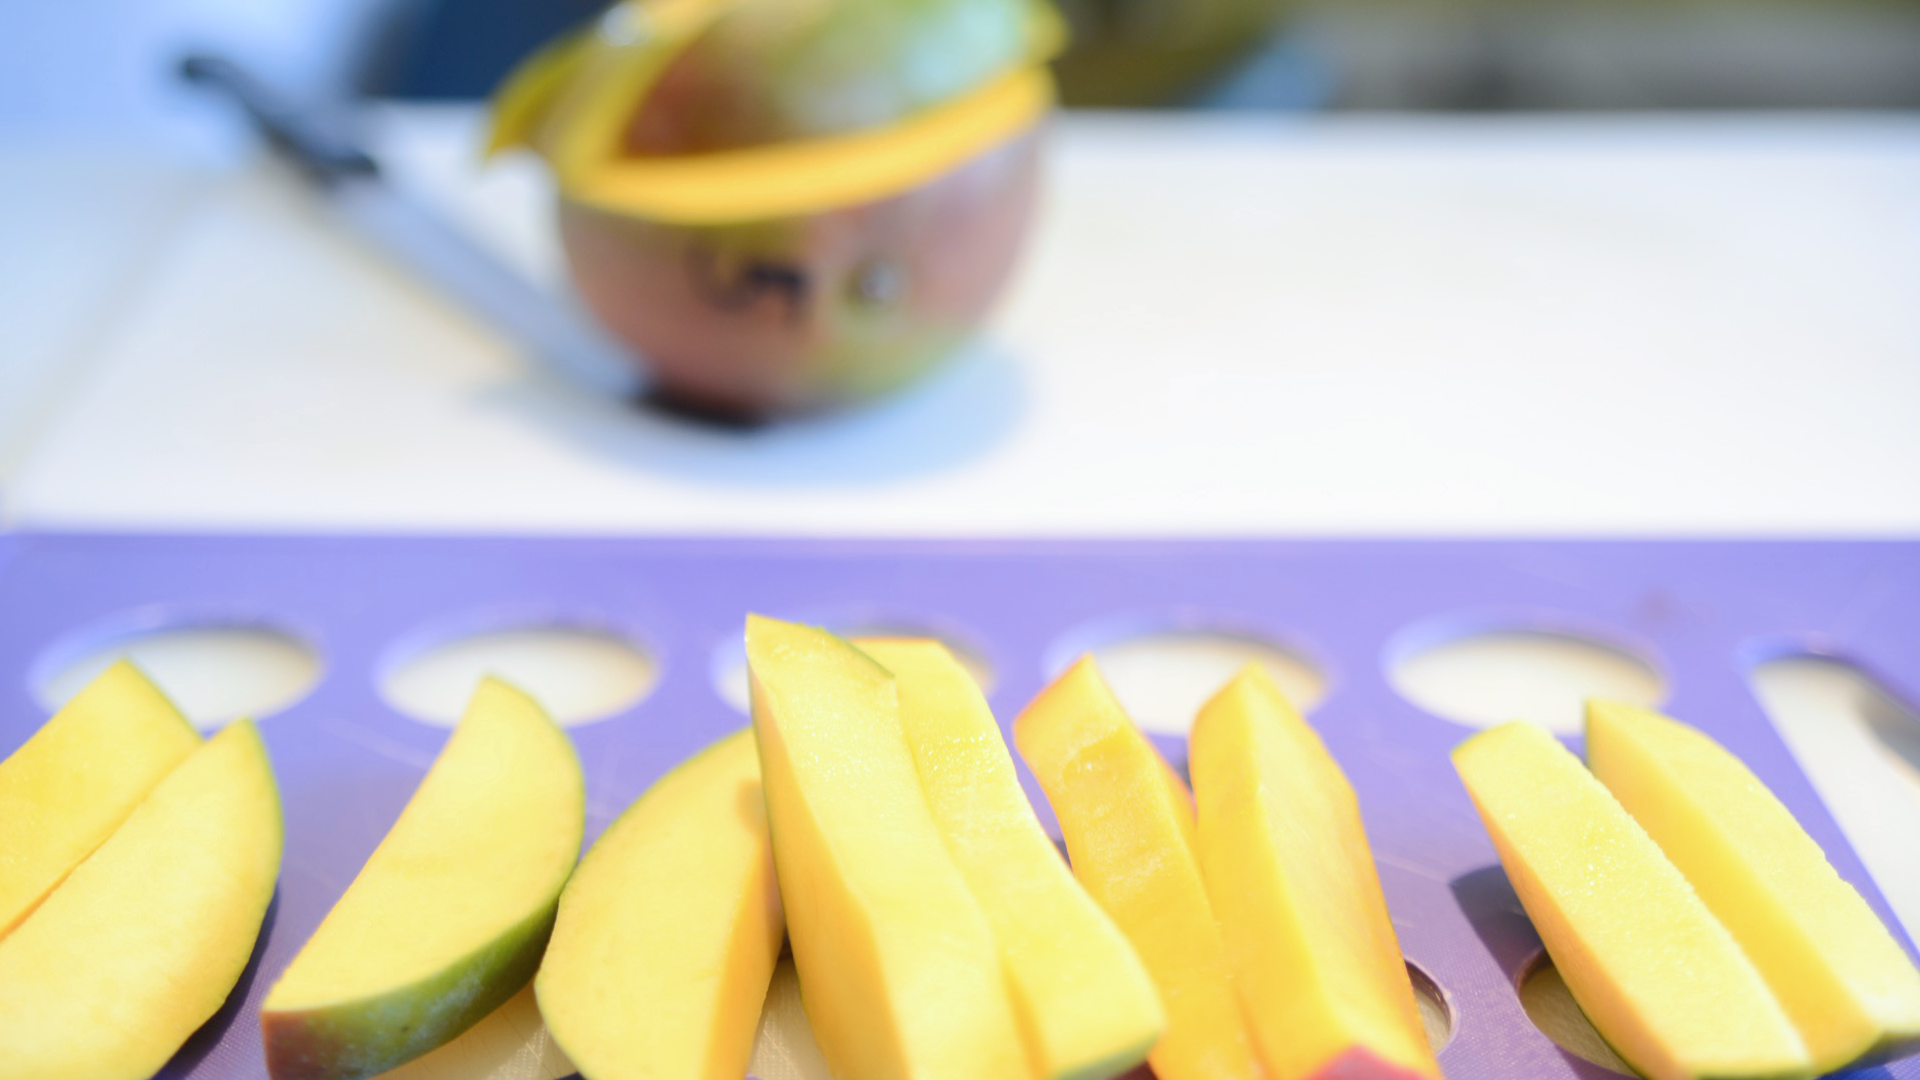 De kwaliteit van Ready to Eat mango’s